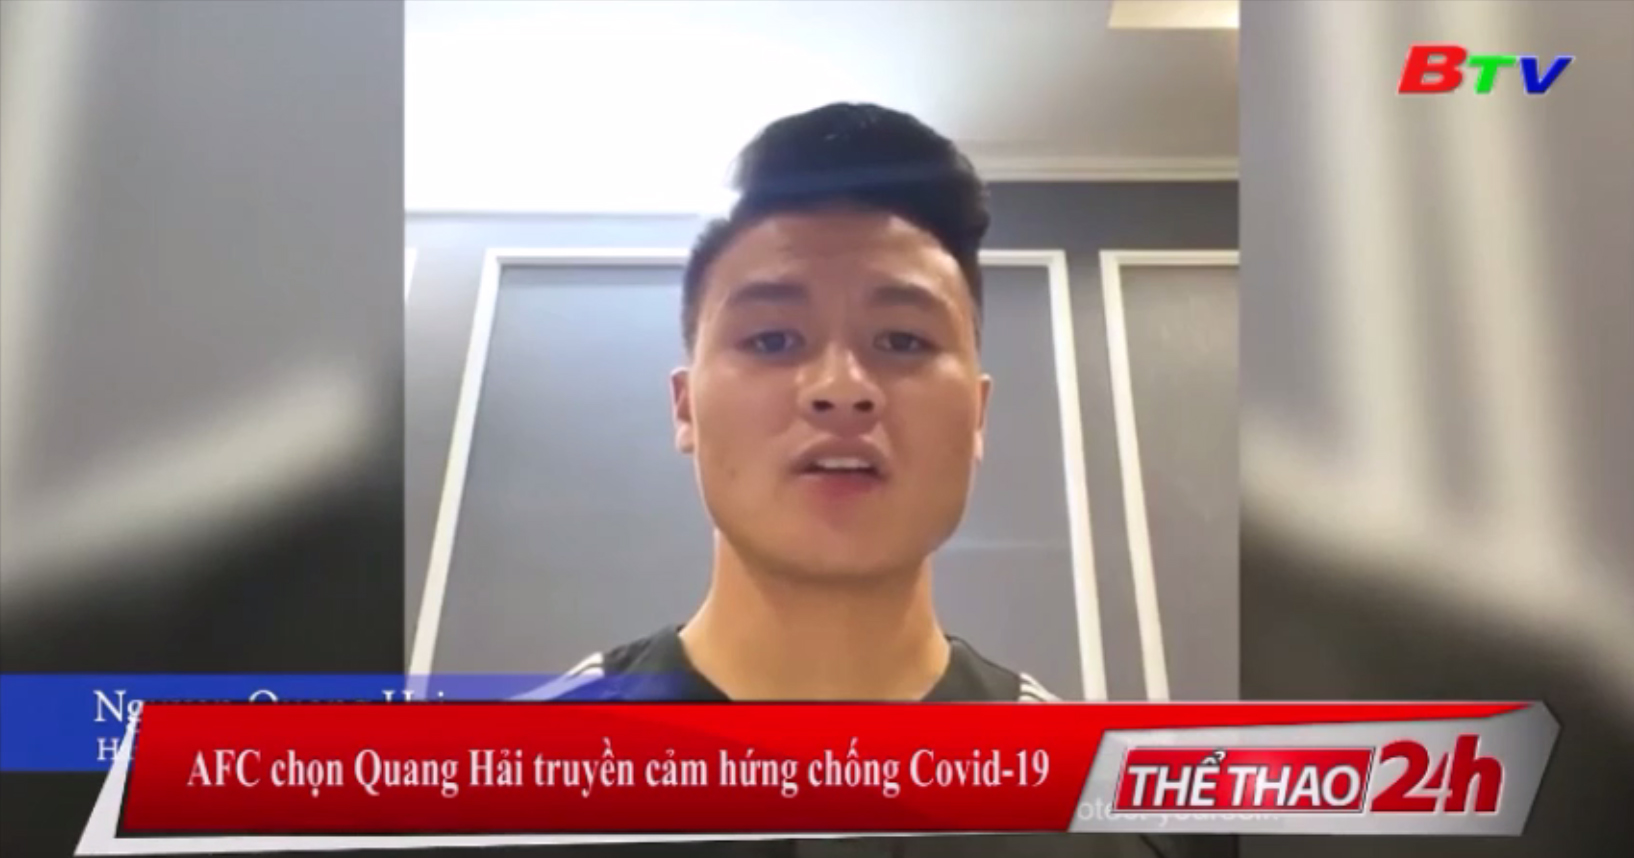 AFC chọn Quang Hải truyền cảm hứng chống Covid-19